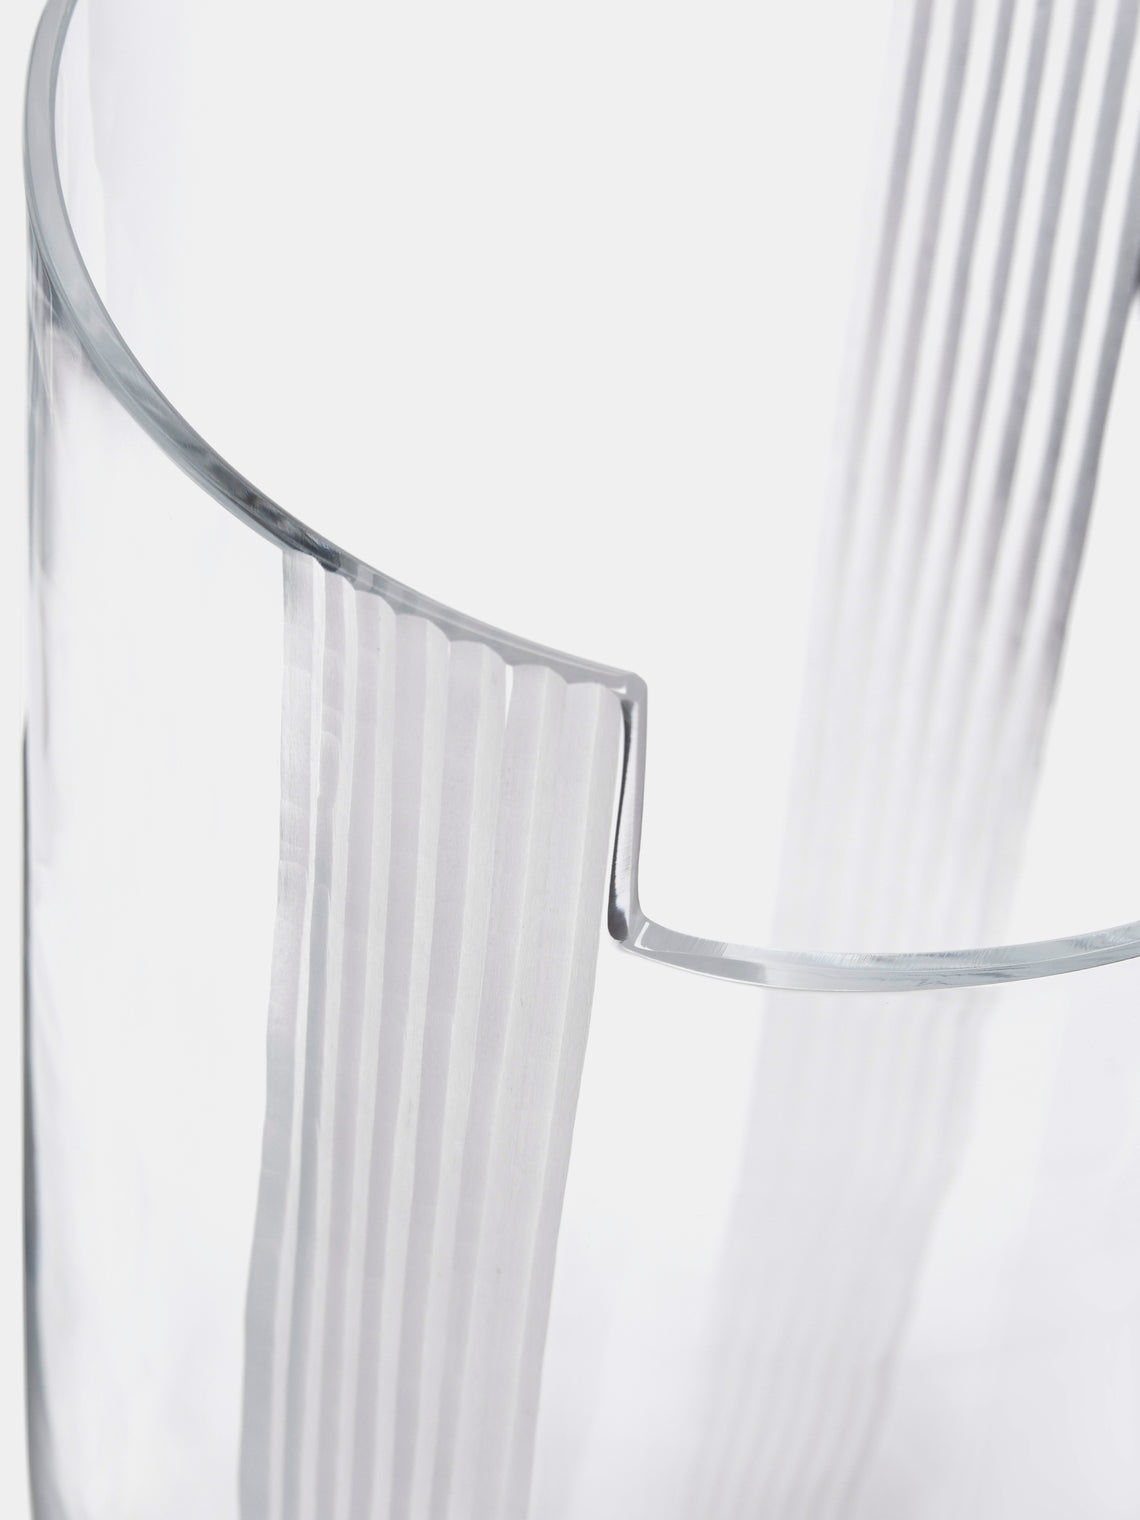 Carlo Moretti - Bande Molate Hand-Blown Murano Glass Vase - Clear - ABASK